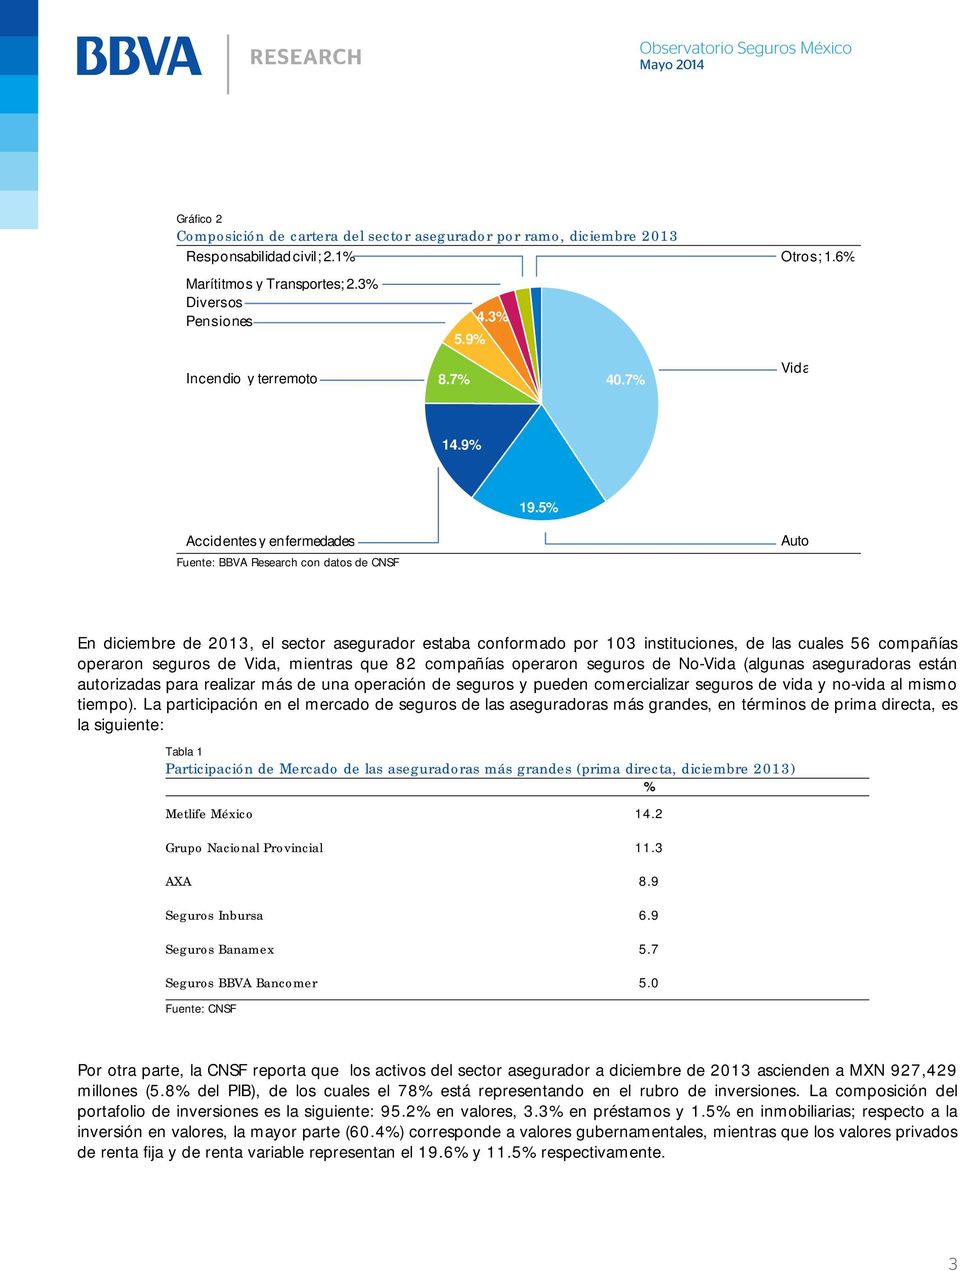 5% Accidentes y enfermedades Fuente: BBVA Research con datos de CNSF Auto En diciembre de 2013, el sector asegurador estaba conformado por 103 instituciones, de las cuales 56 compañías operaron